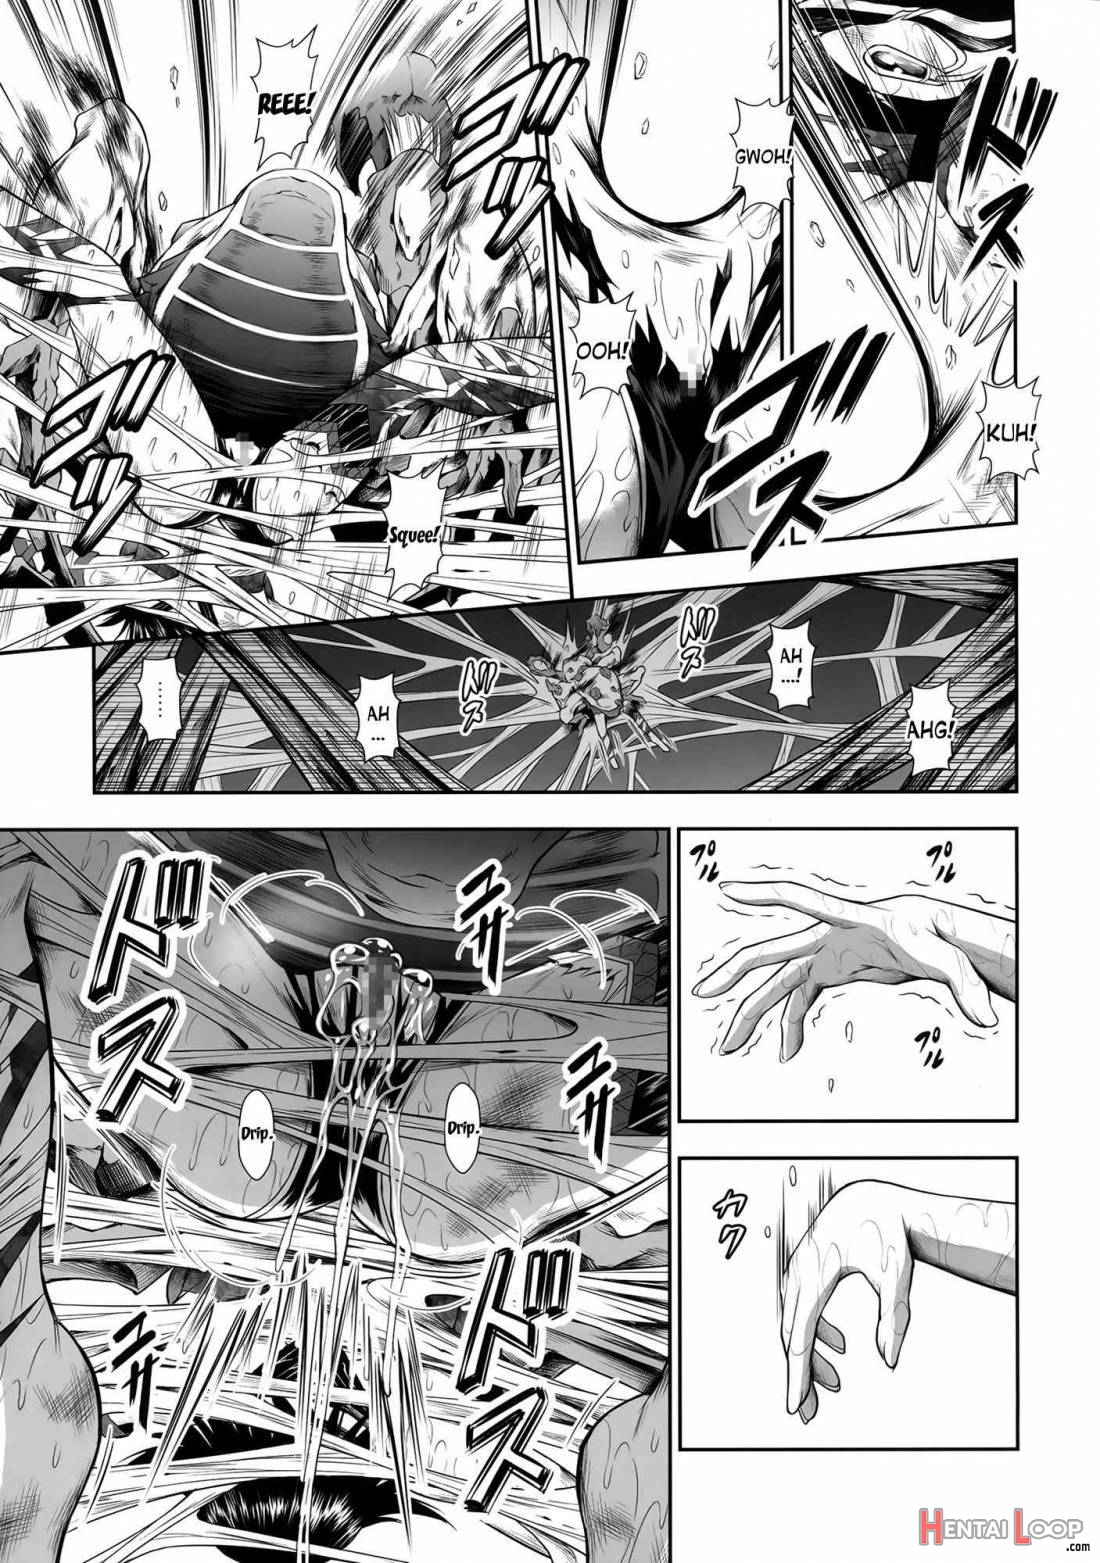 Pair Hunter no Seitai Vol. 2-2 page 12